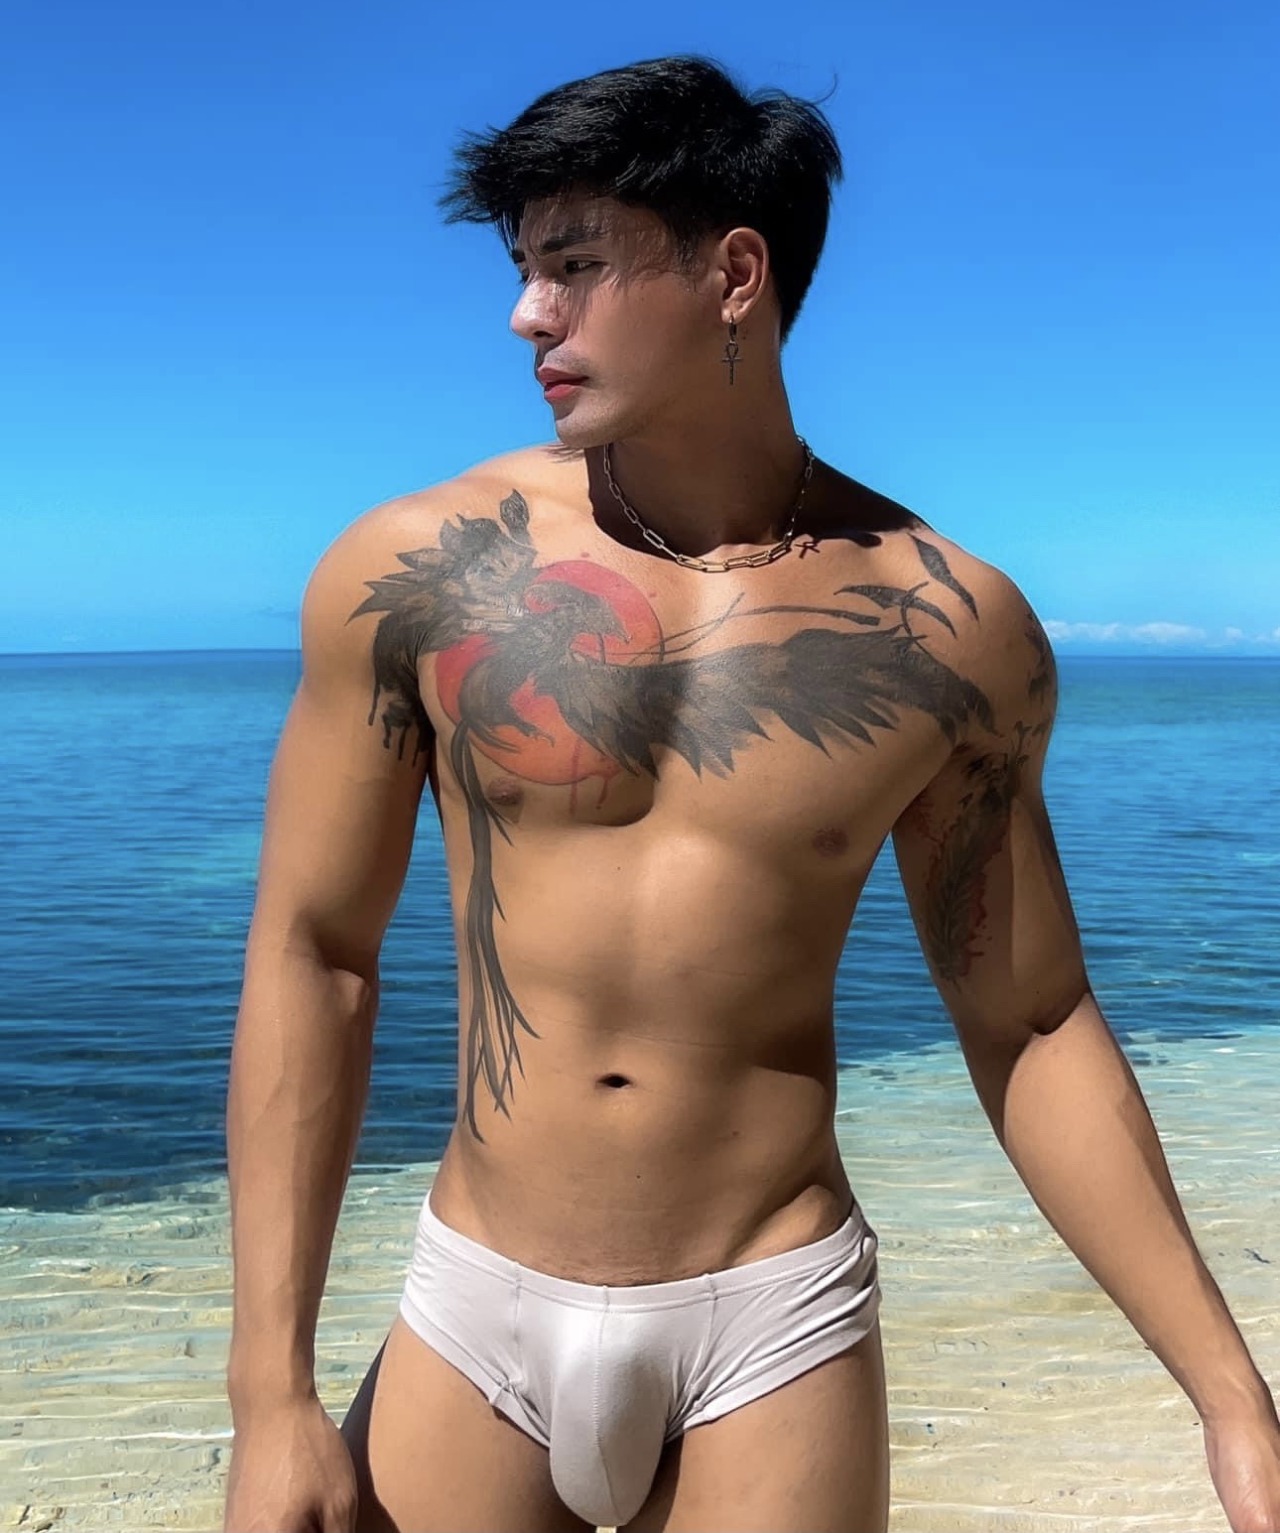 asian-men-x: great bulge adult photos